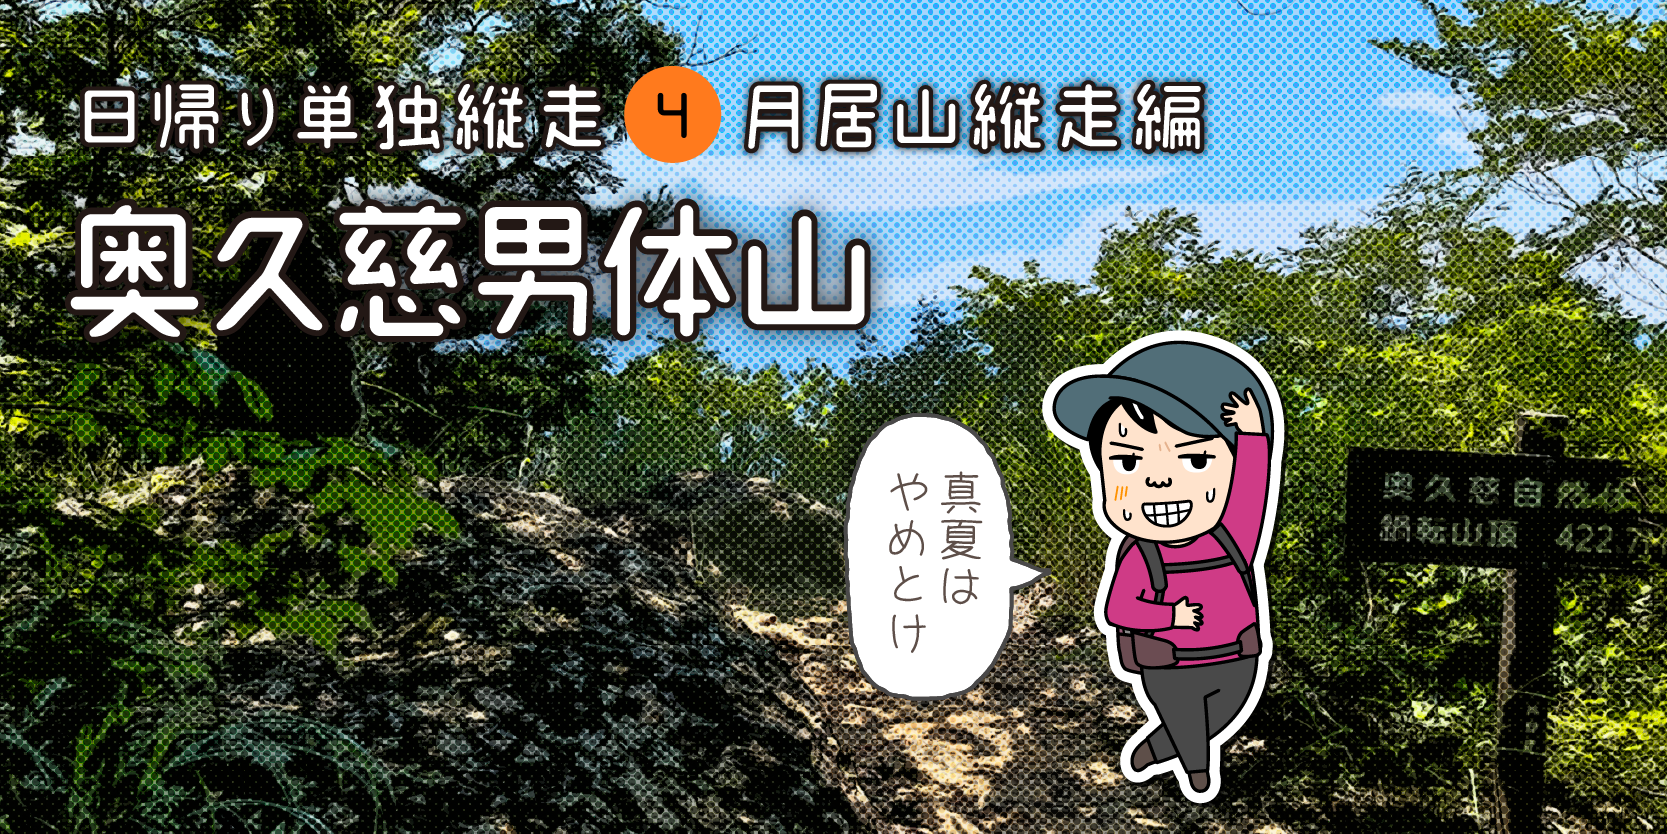 奥久慈男体山から袋田の滝縦走タイトル画面